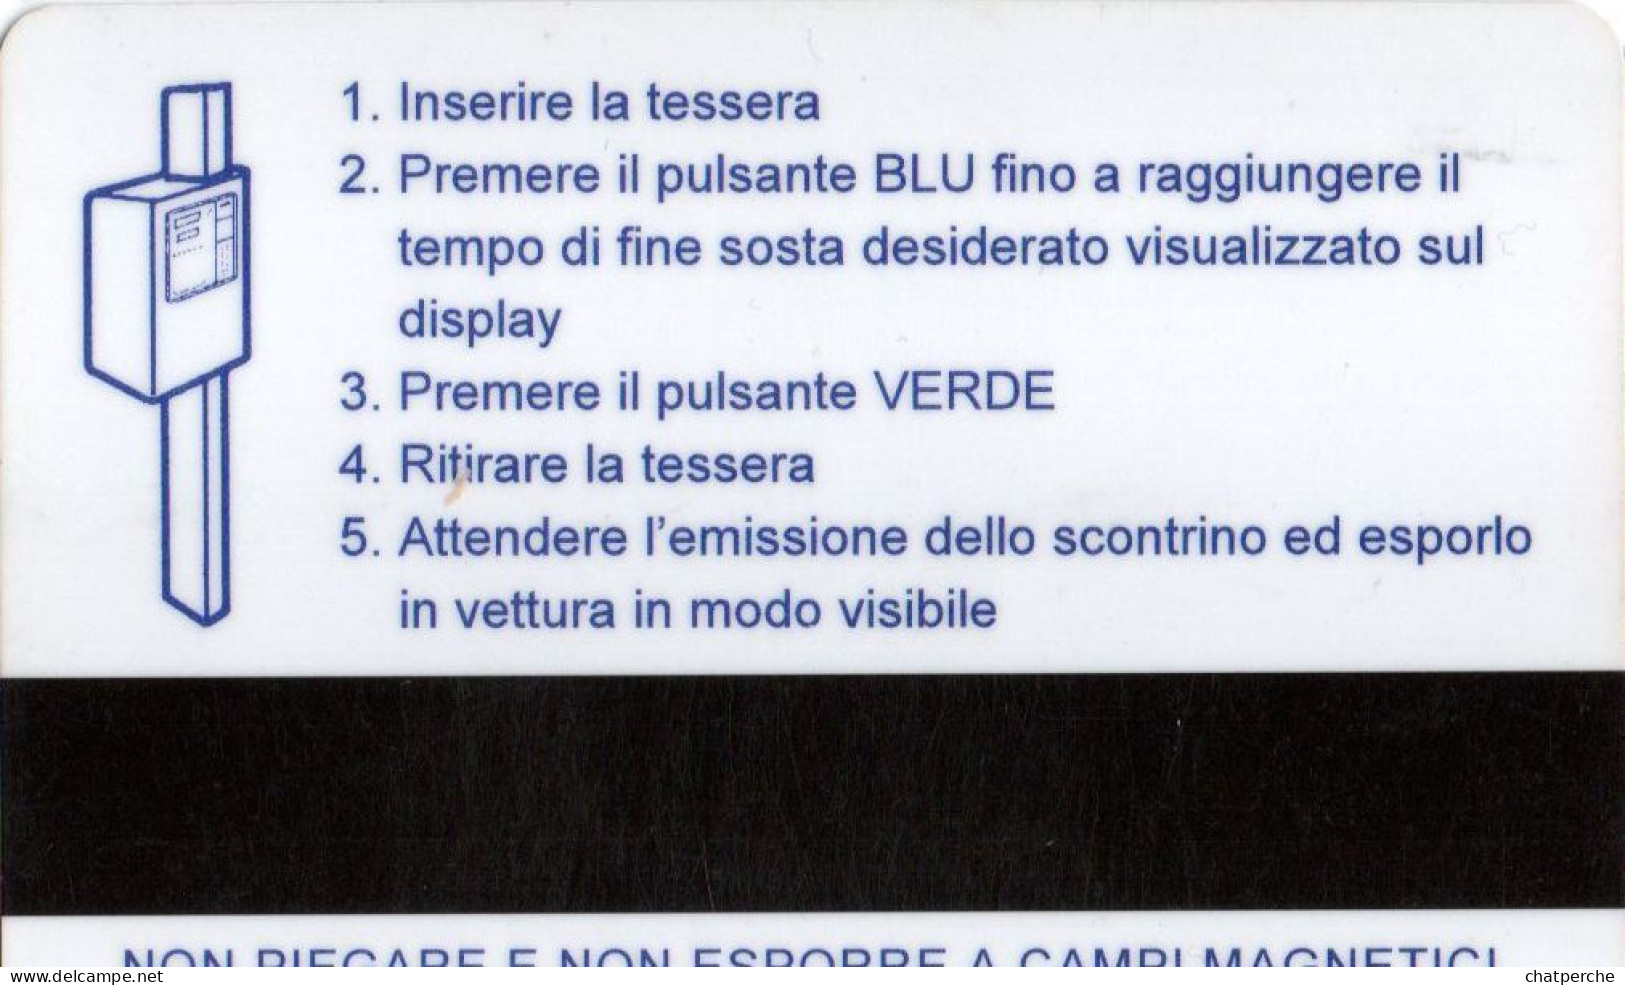 CARTE STATIONNEMENT BANDE MAGNETIQUE PARKING LINE PARK CARD...  ITALIE - Autres & Non Classés